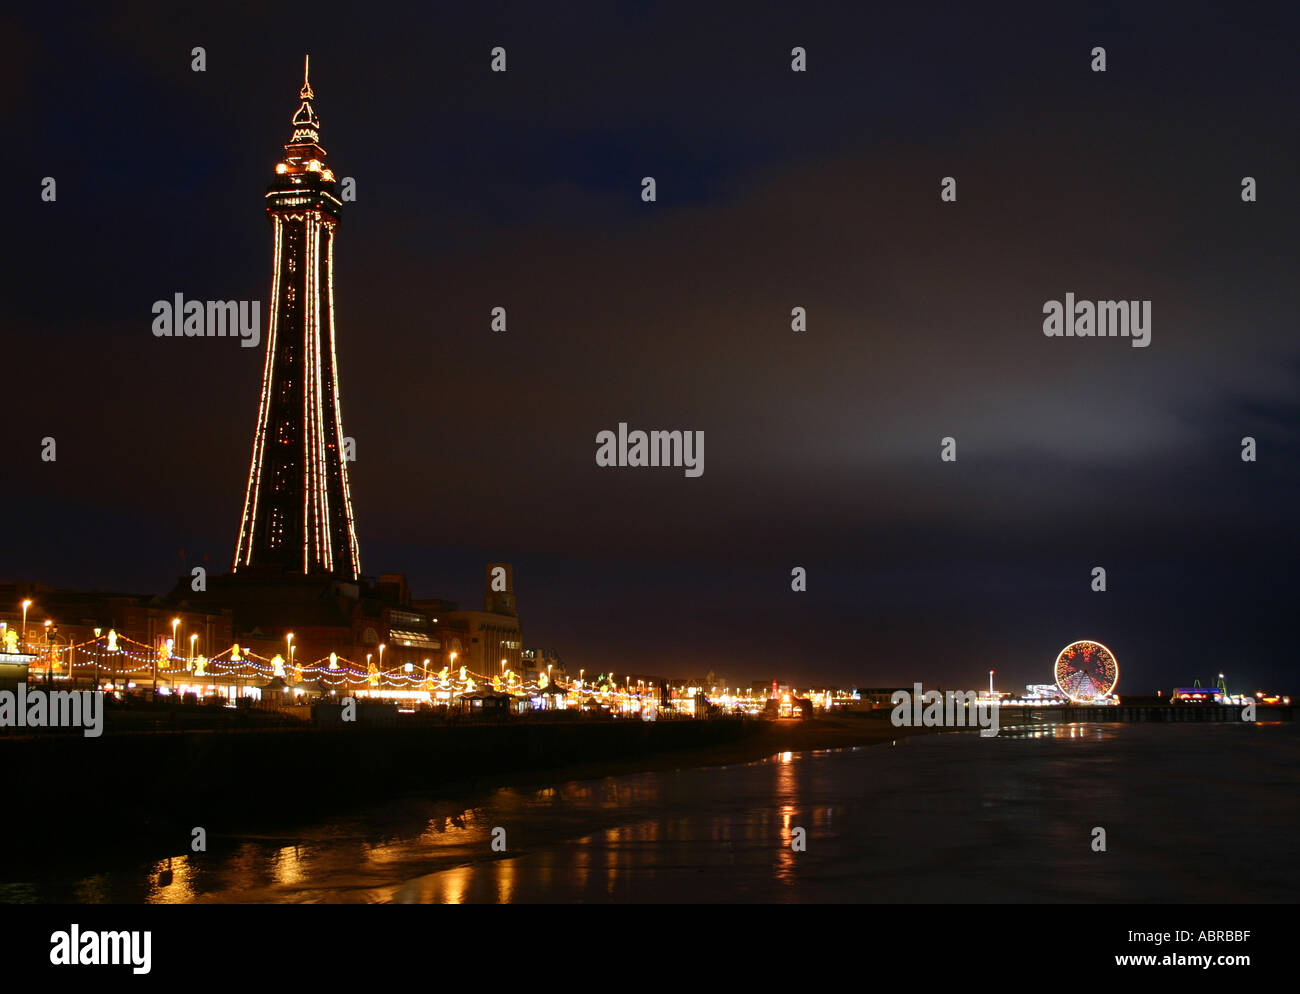 La tour de Blackpool et illuminations de nuit Banque D'Images